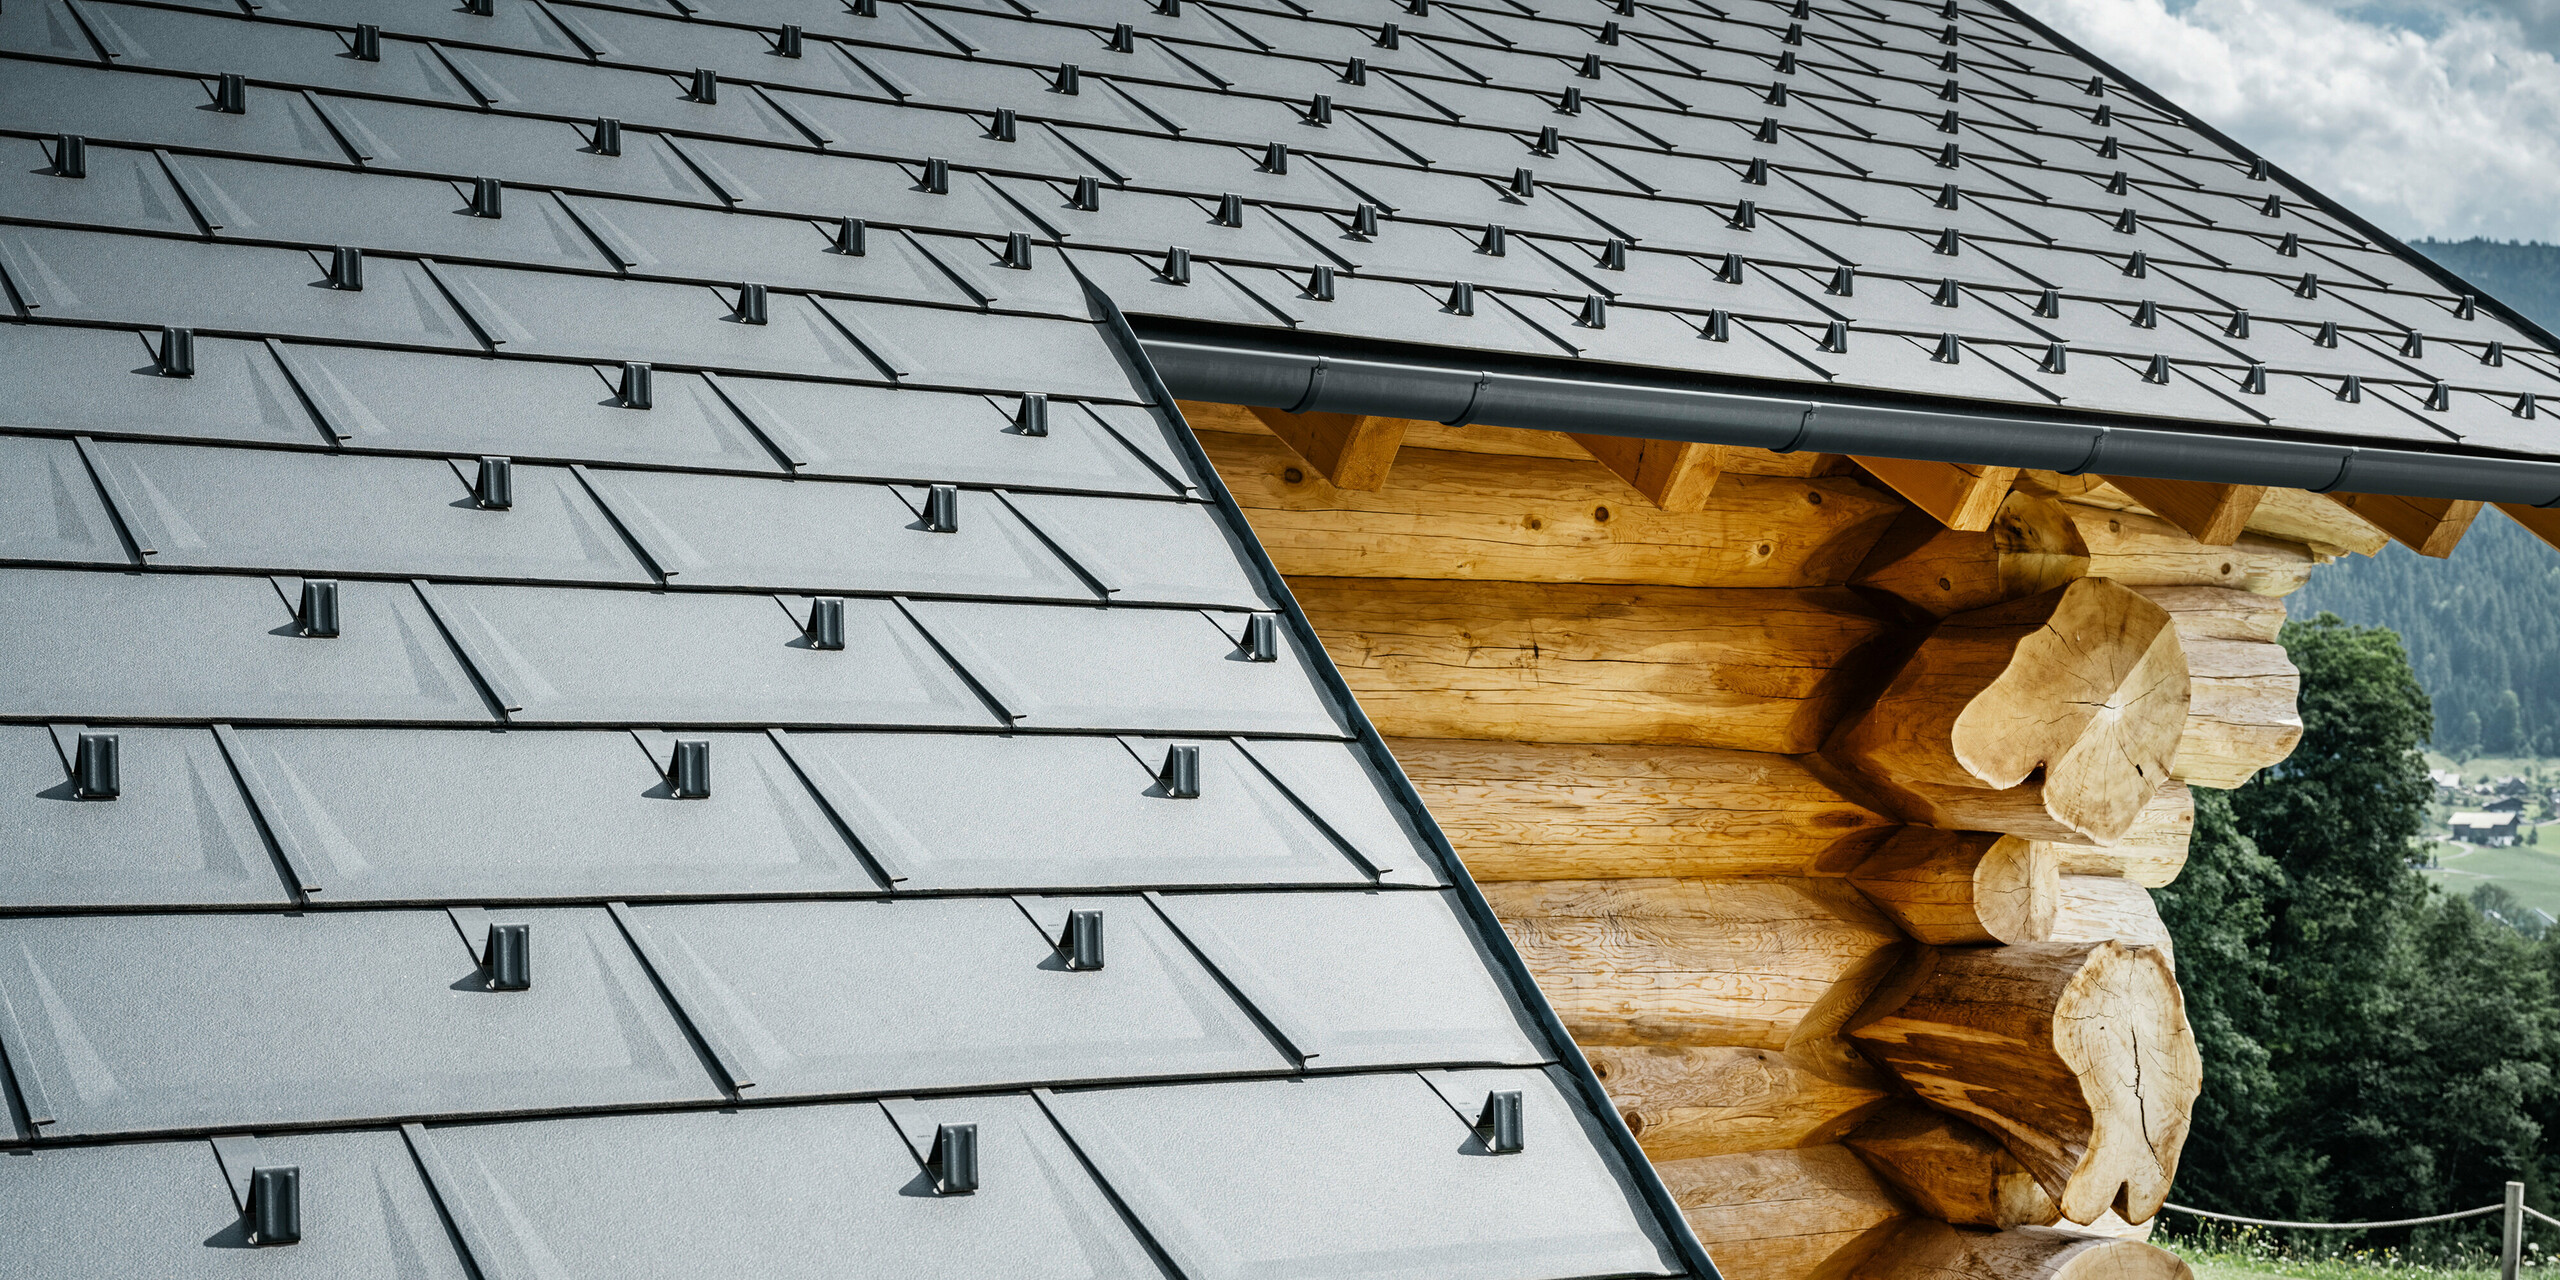 Detailní pohled na střechu se střešními panely PREFA R.16 v barvě P.10 antracitové na srubovém domě v Gosau, Horní Rakousko. Precizní zpracování a montáž robustních střešních panelů dokazuje vysokou kvalitu hliníkových výrobků PREFA a také dokonalou integraci moderních hliníkových komponentů do tradičních typů budov z Rakouska. V popředí jsou vidět charakteristické sněhové zábrany, které zajišťují bezpečnost v alpské zimě. Tento obrázek zachycuje harmonickou interakci inovativních střešních systémů PREFA s přirozenou estetikou dřevěného srubu.